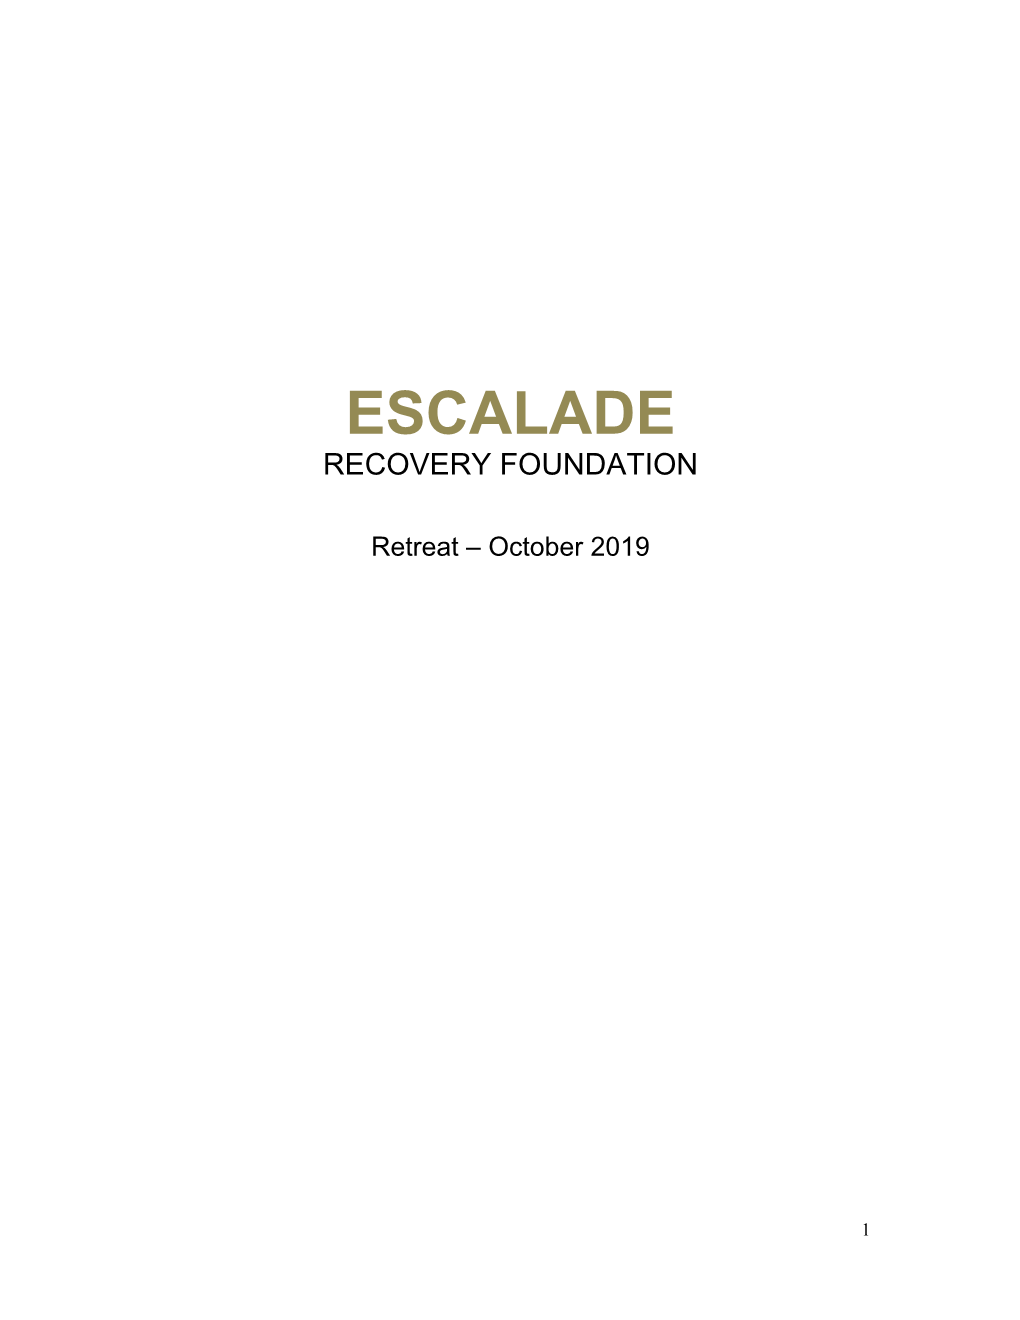 Escalade Recovery Foundation